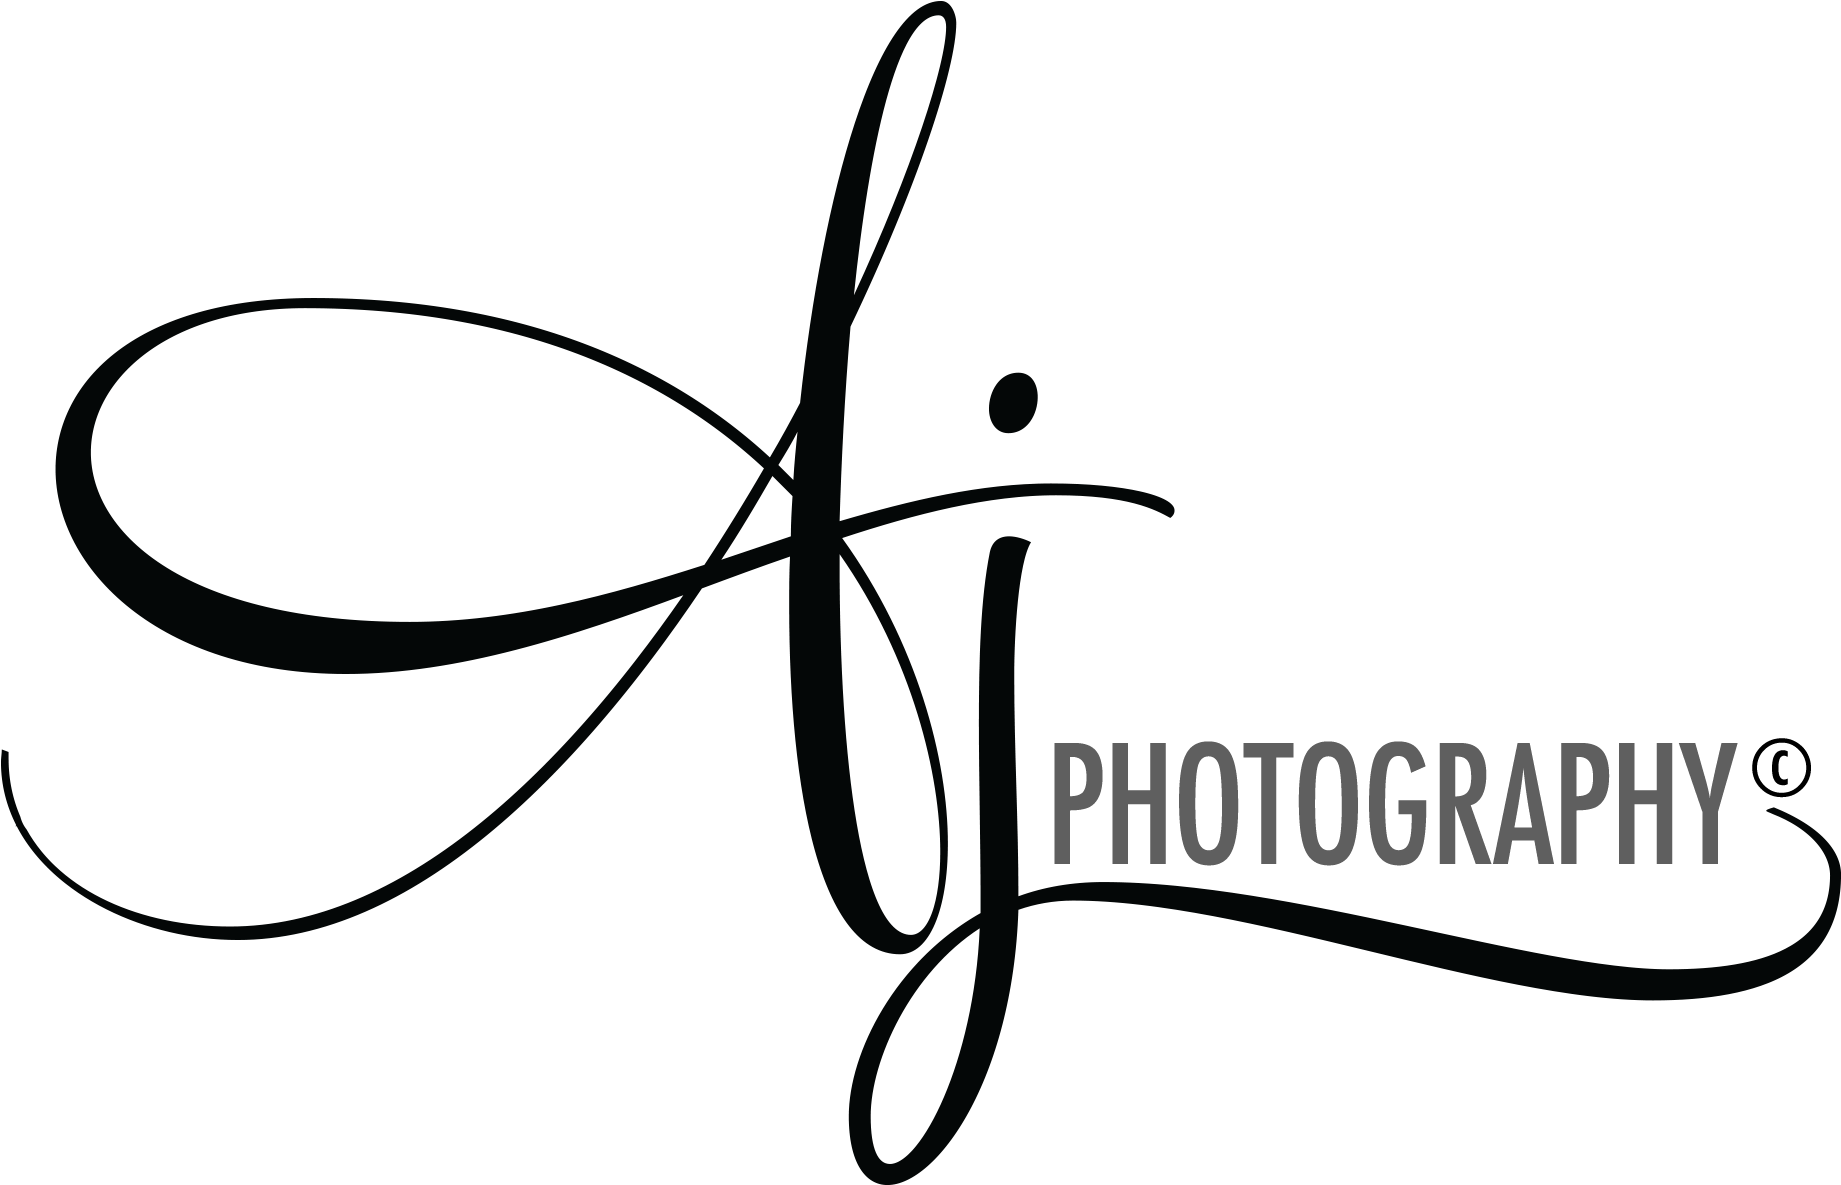 Aj Logo - Aj Photography Logo Png (1950x1185)